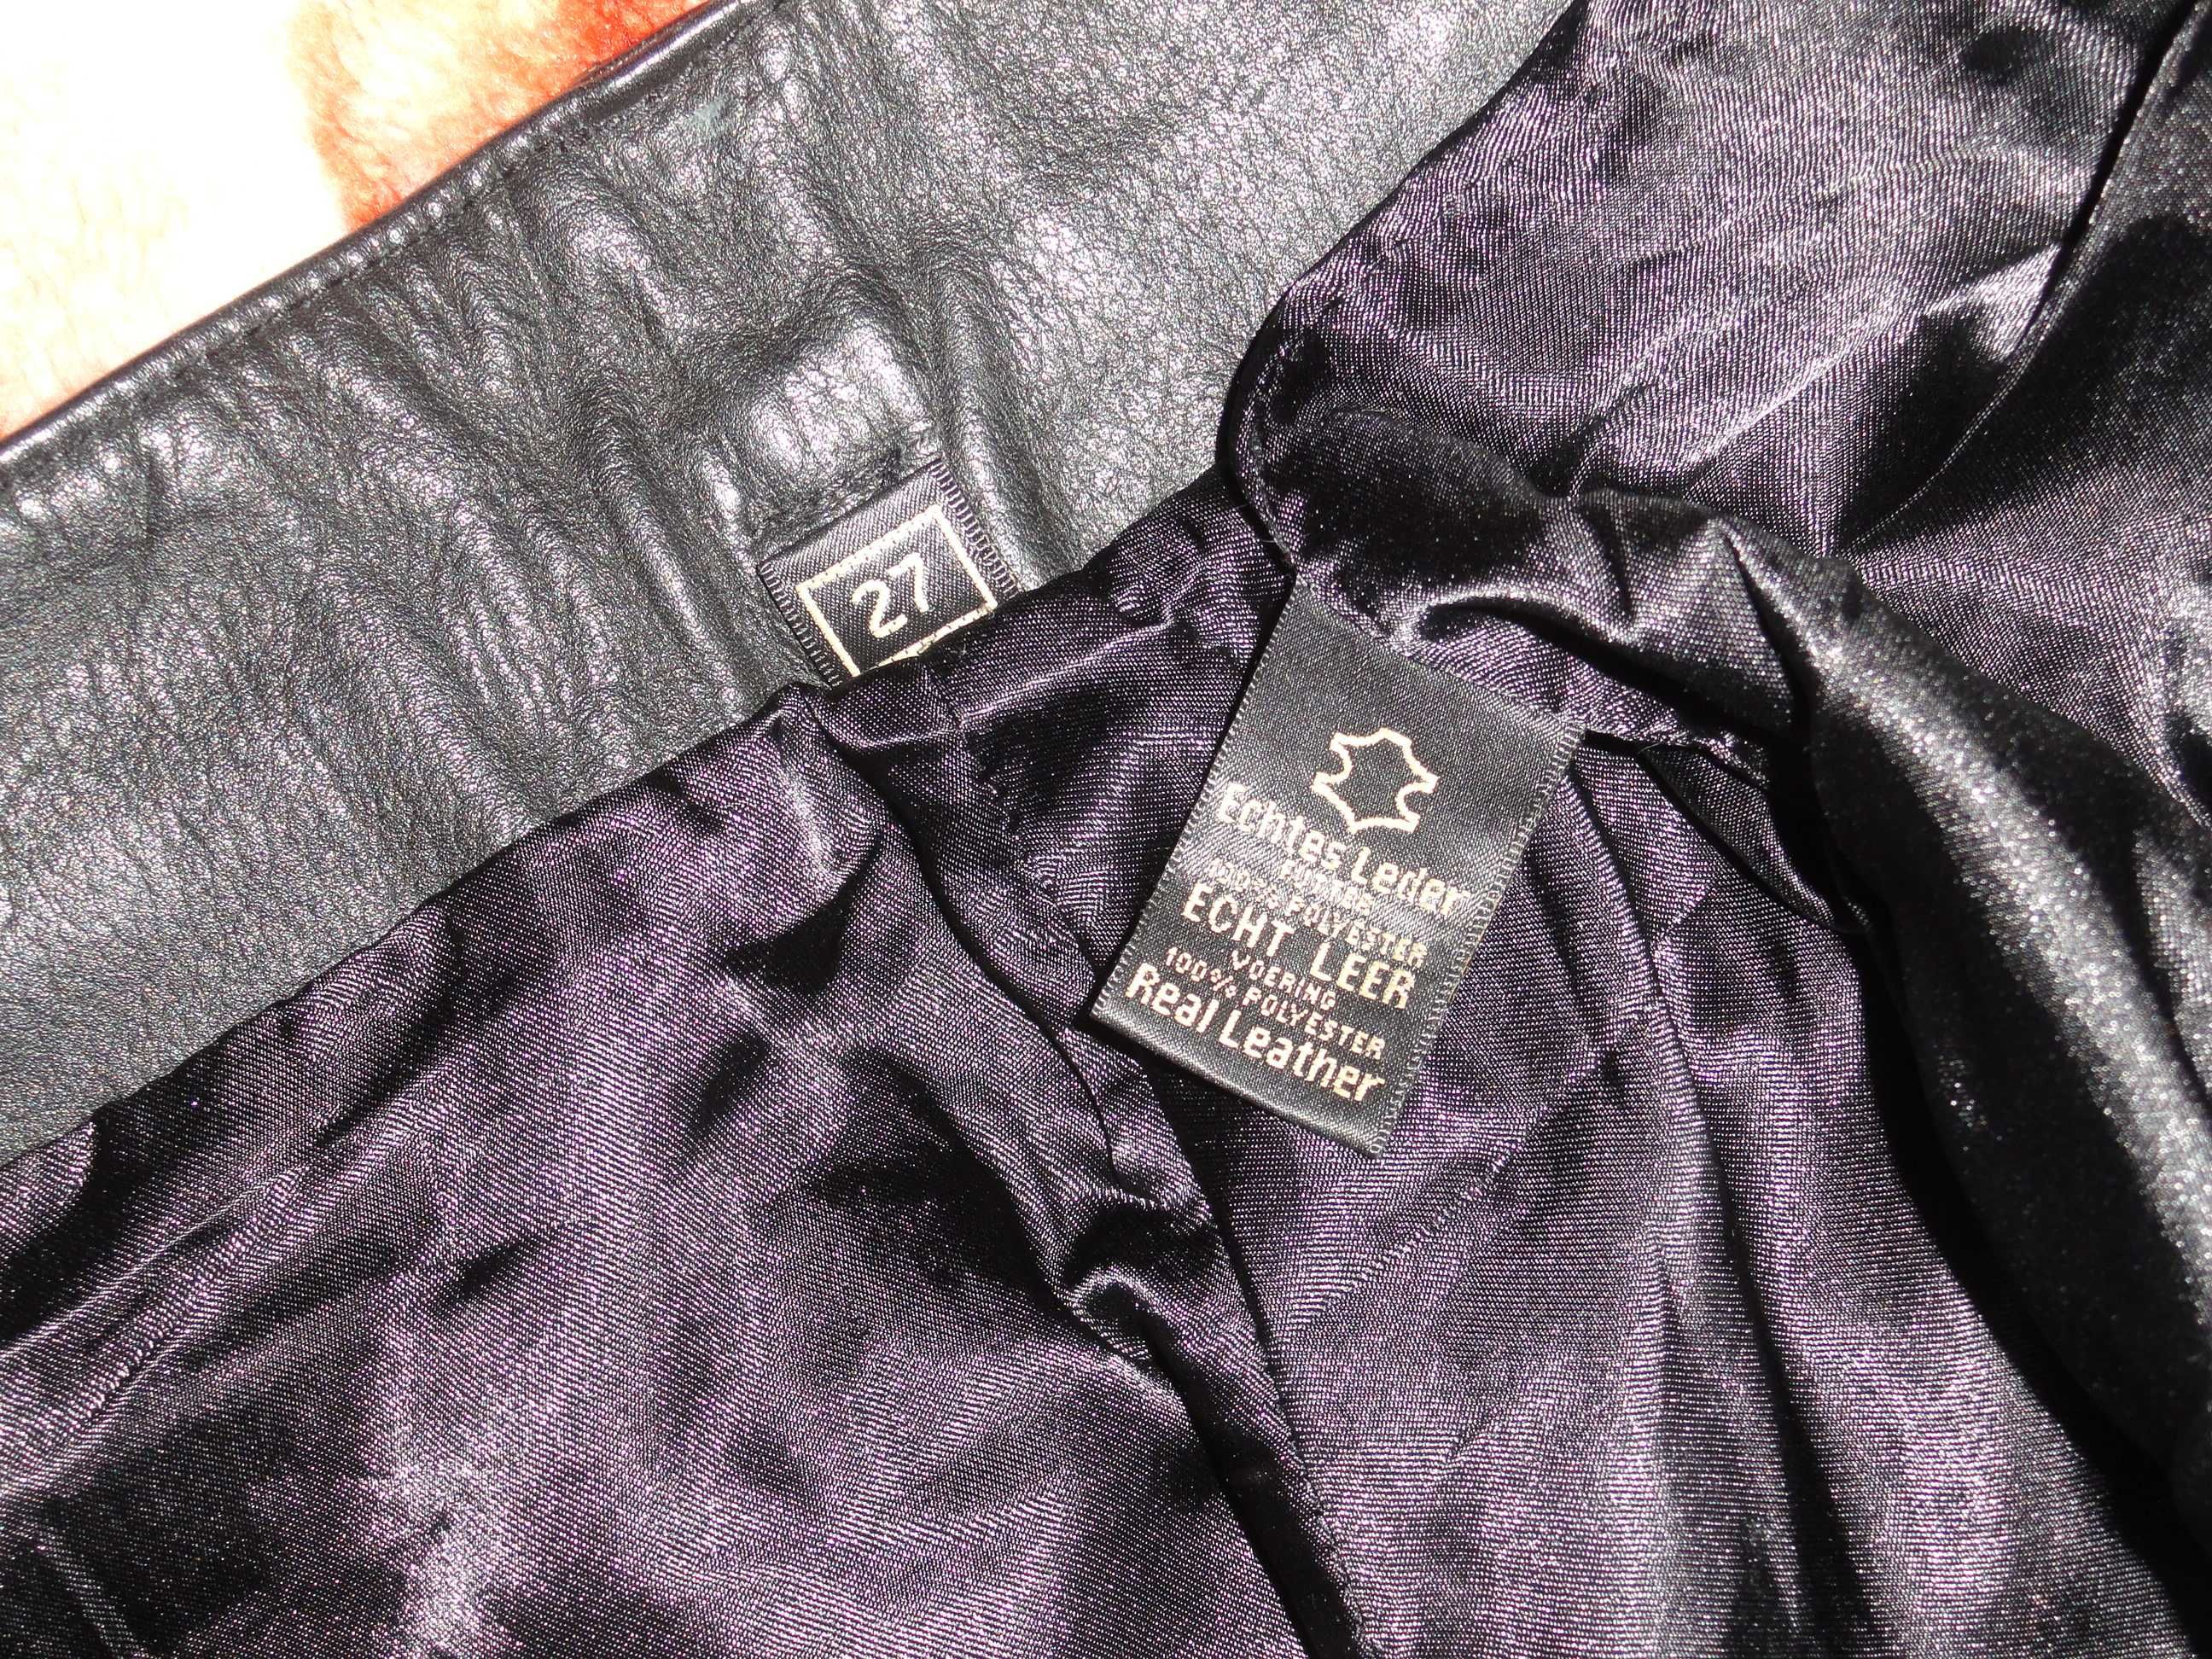 Эксклюзивные кожаные штаны (Leather натуральная кожа)